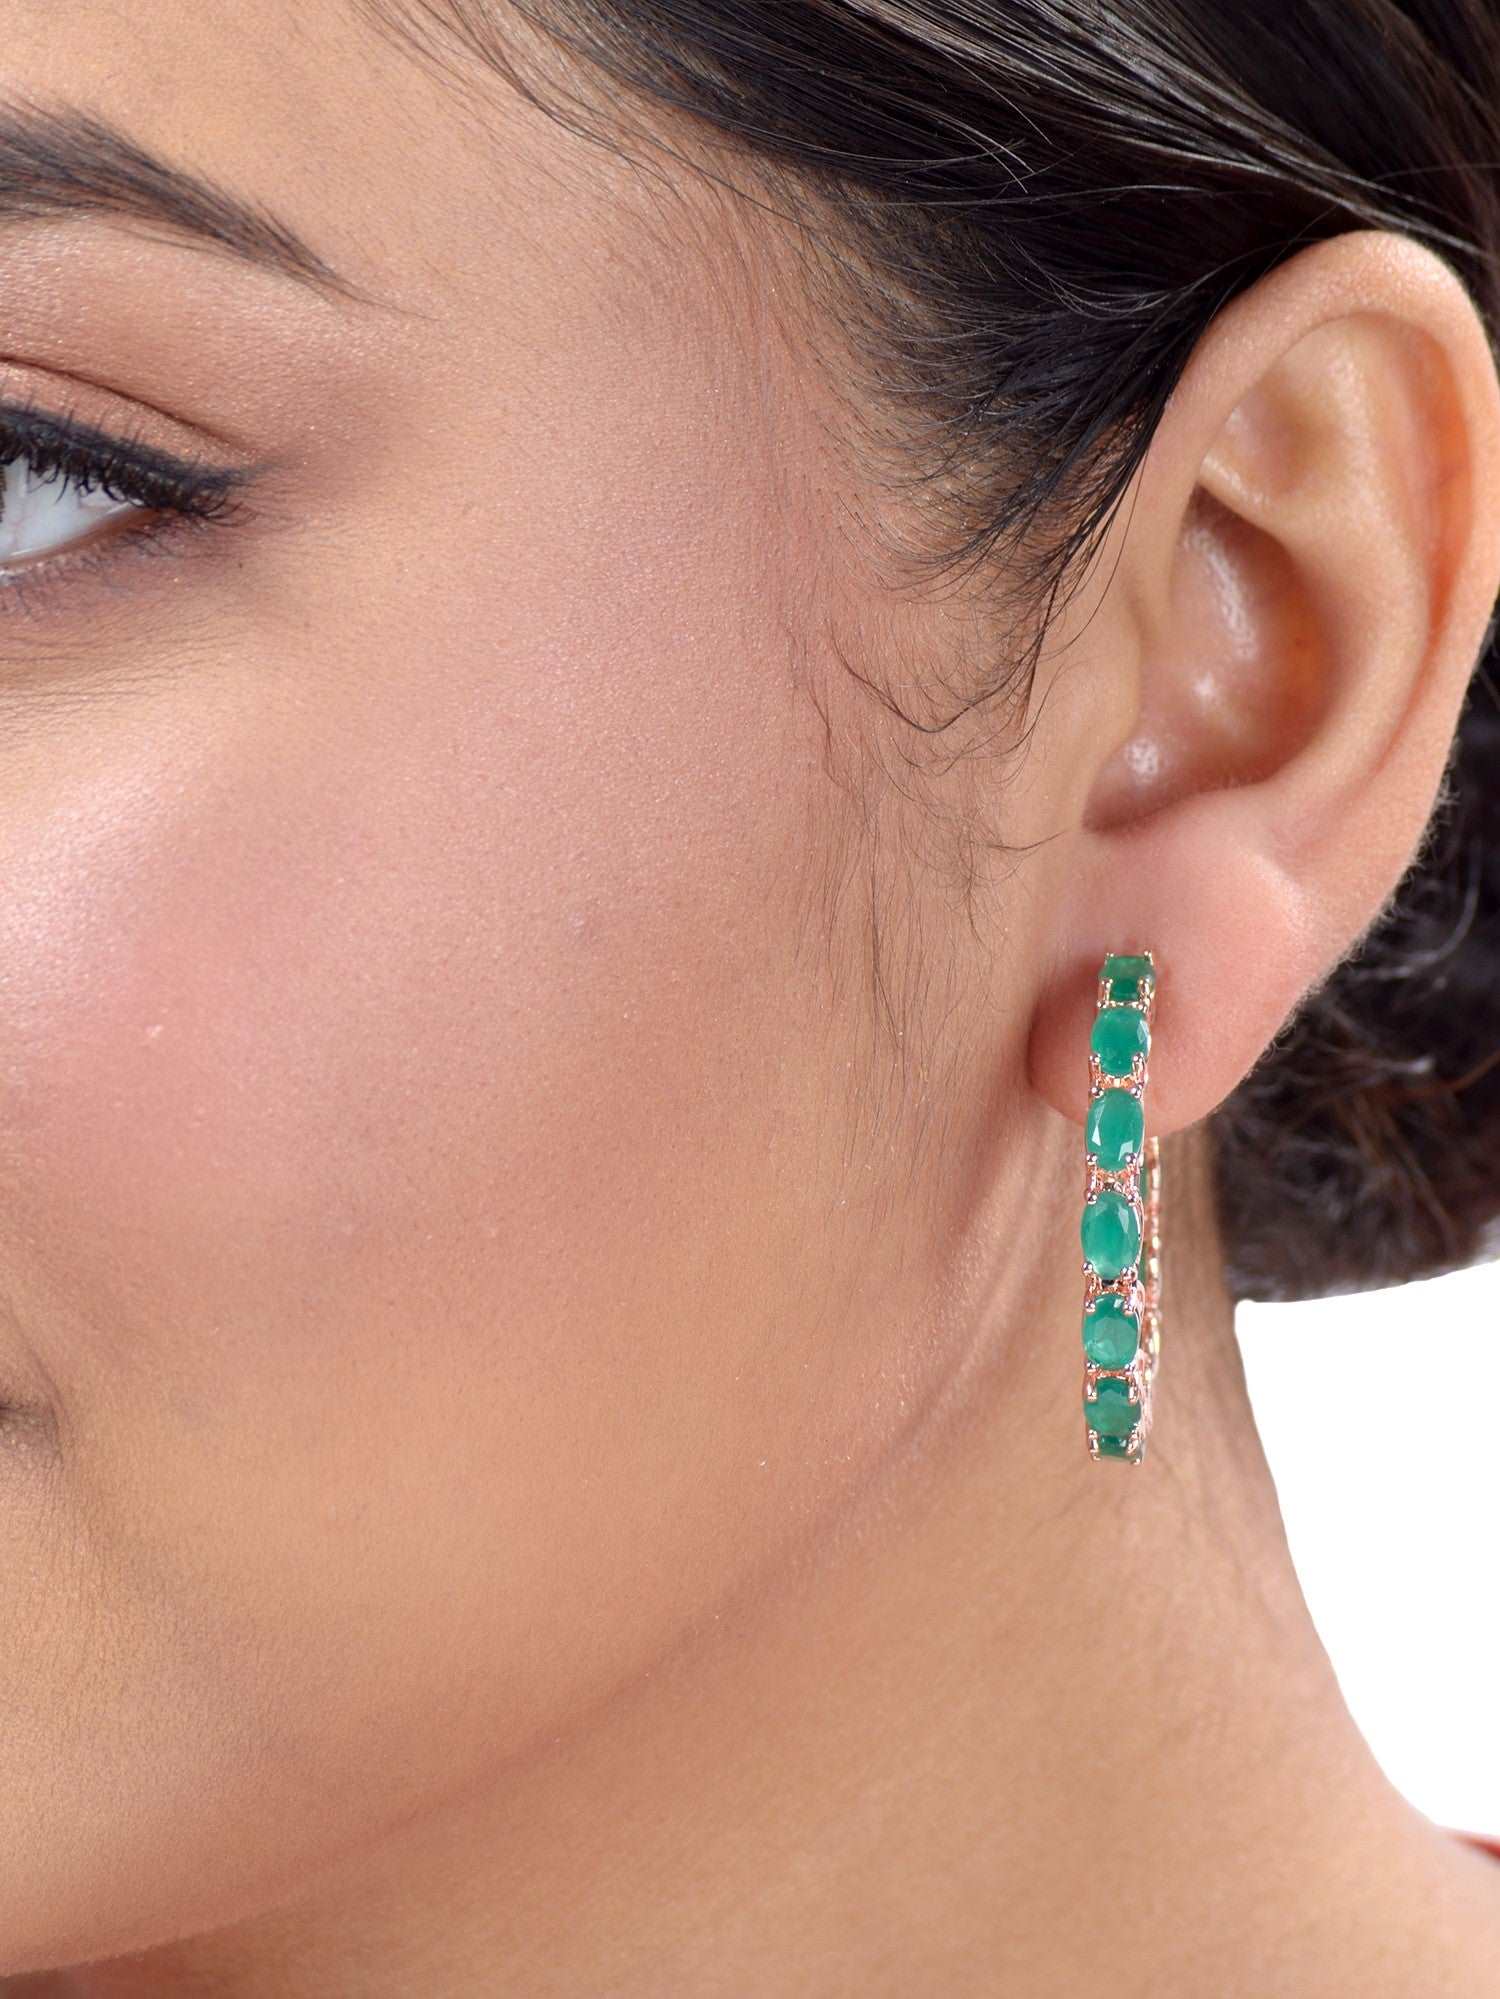 Huge Emerald Earrings, Evening Earrings, Large Green Black Jewelry for  Women, Big Cross Earrings, Massive Party Earrings - Etsy | Green black  jewelry, Earrings, Etsy earrings